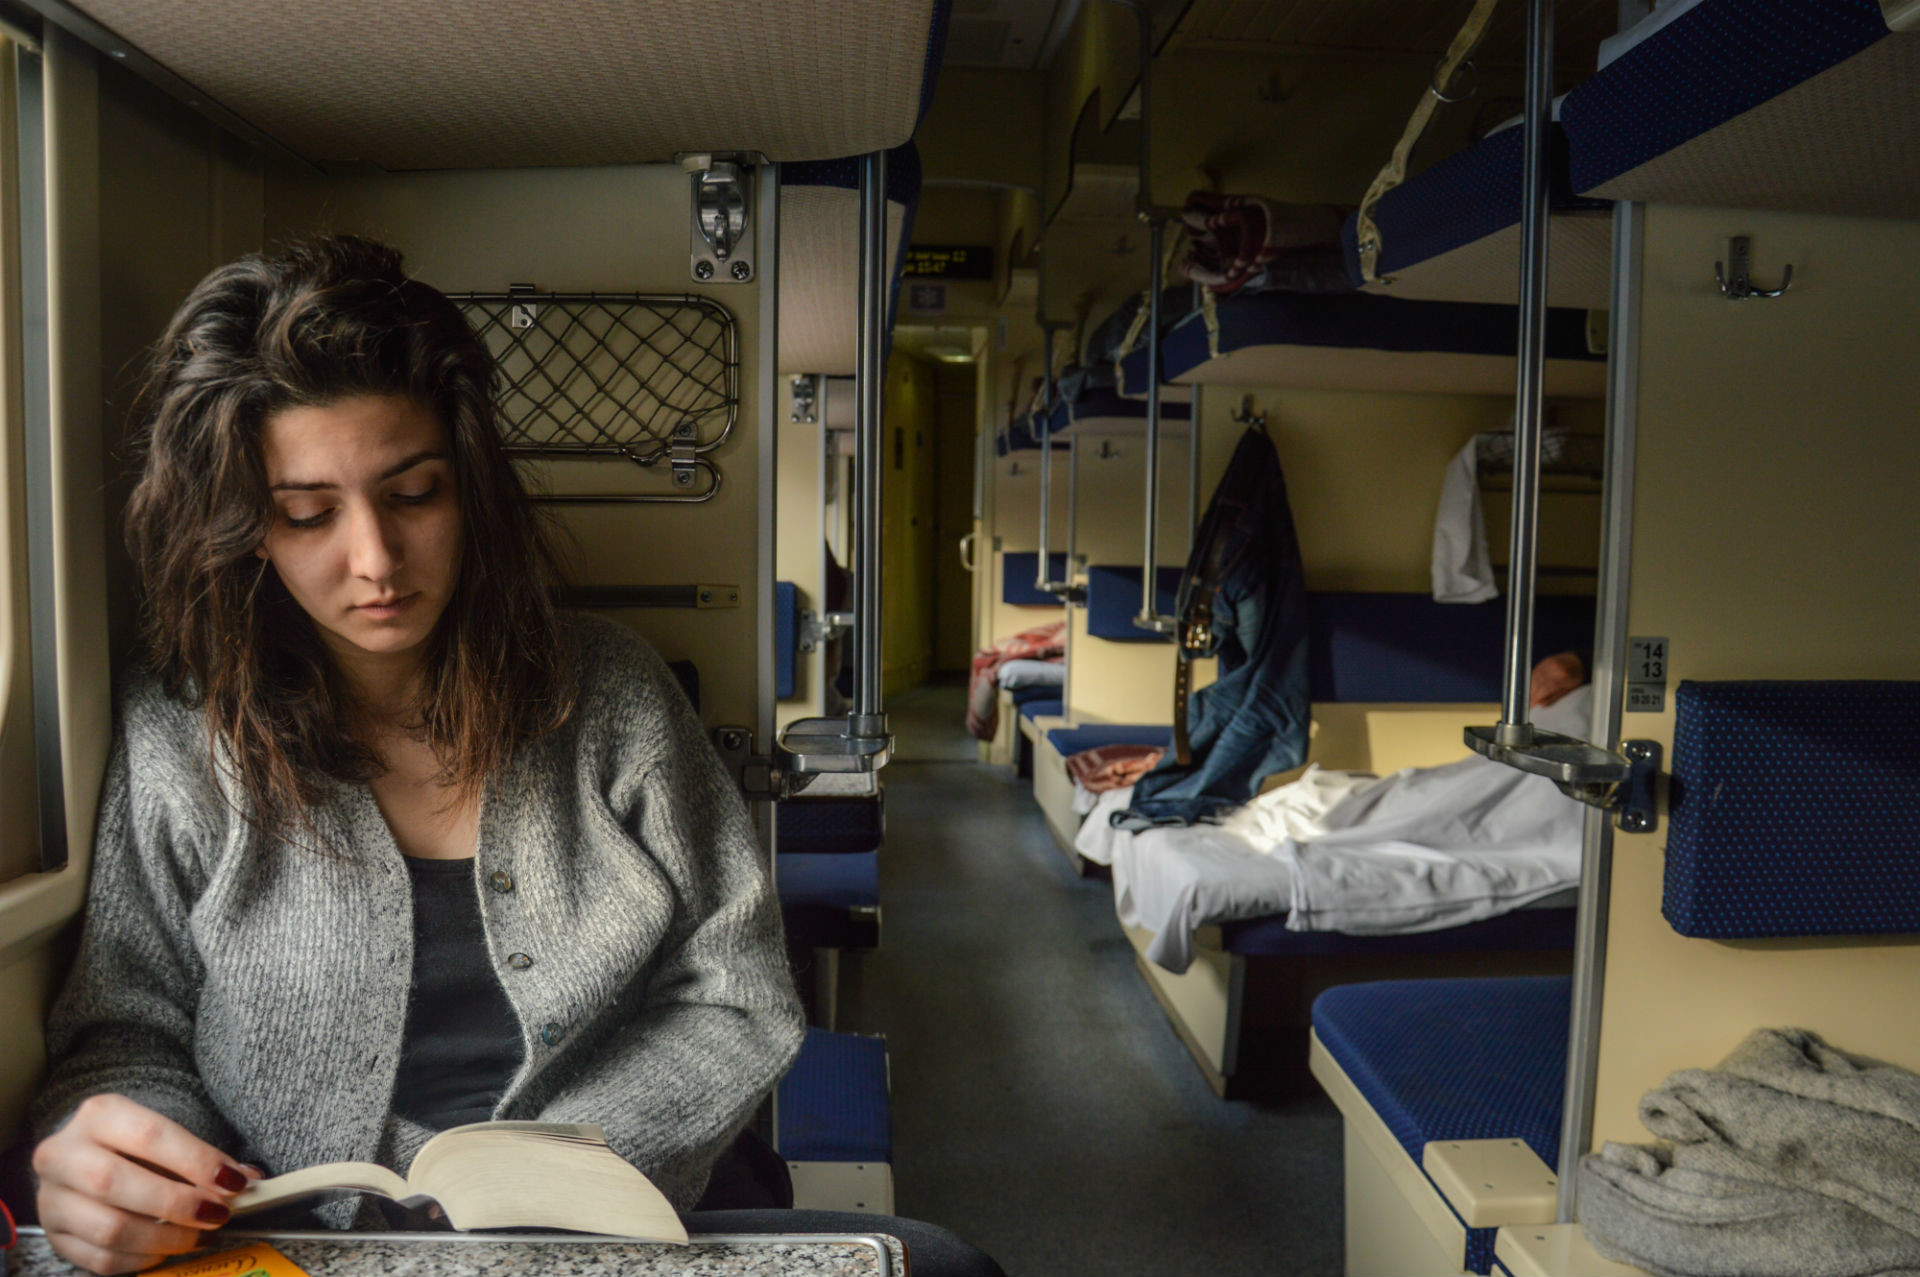 Come passare il tempo durante un lungo viaggio su un treno russo? Con una lettura leggera. Che ne dite di “Anna Karenina”?